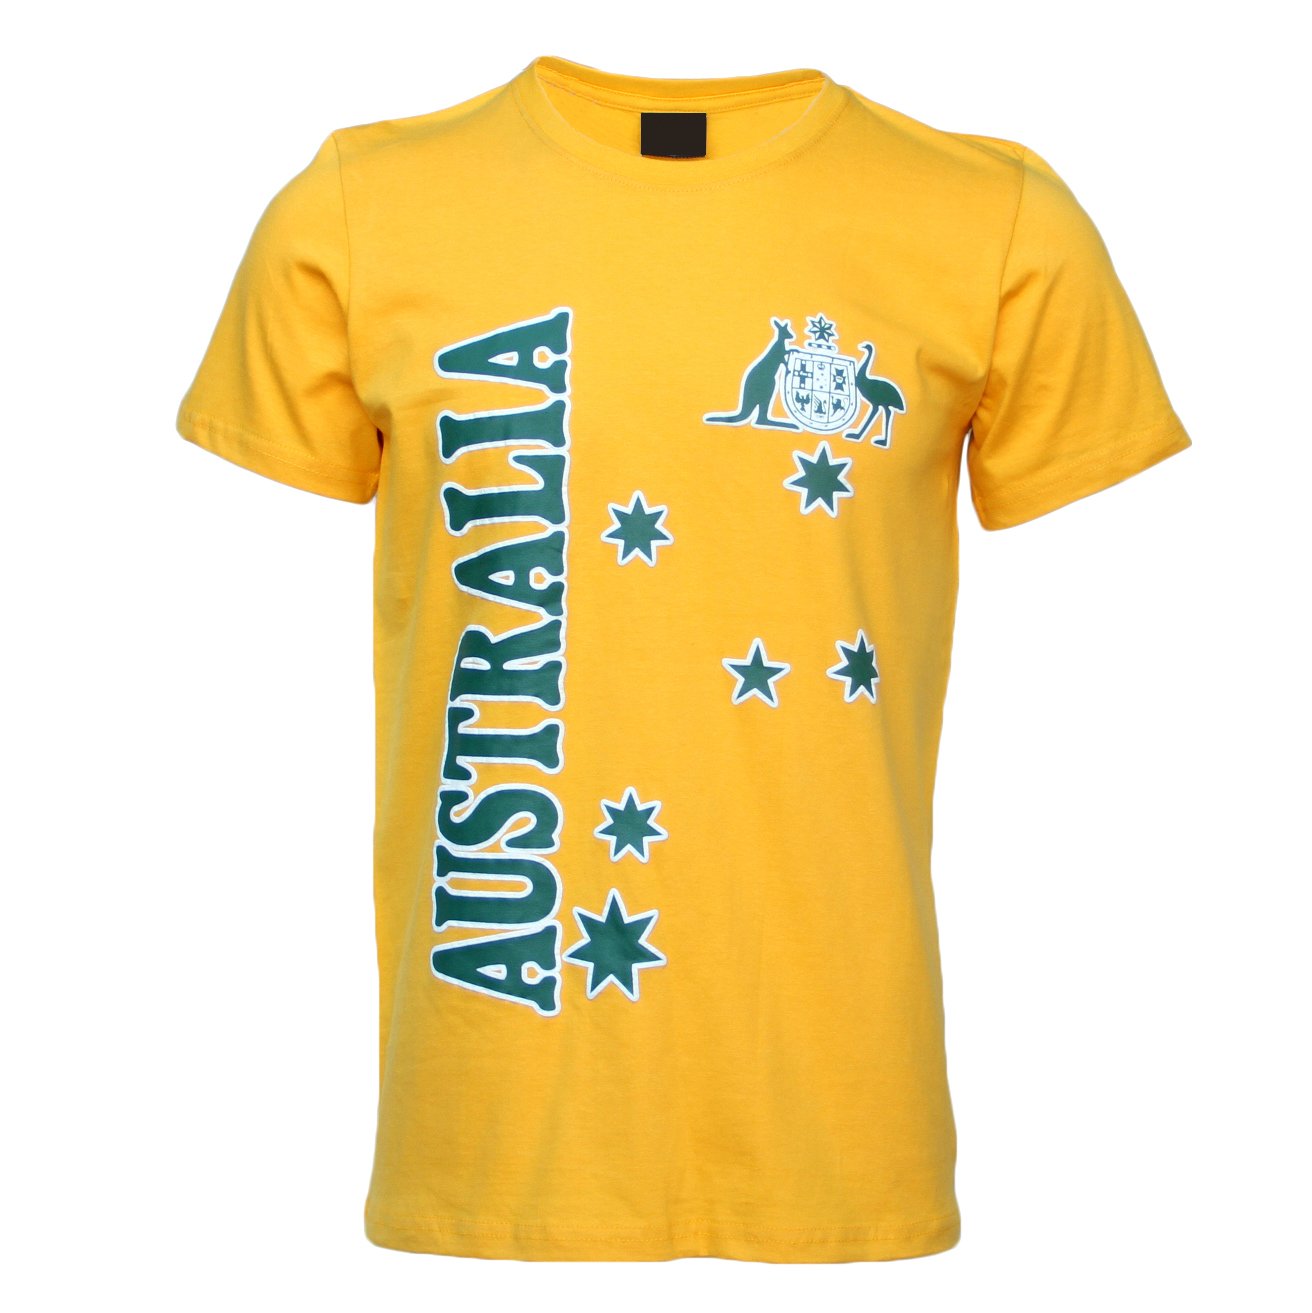 Unisex Adults Kids Mens Womens Australian Day Aussie Souvenir Tee Tops T Shirt - Zmart Australia